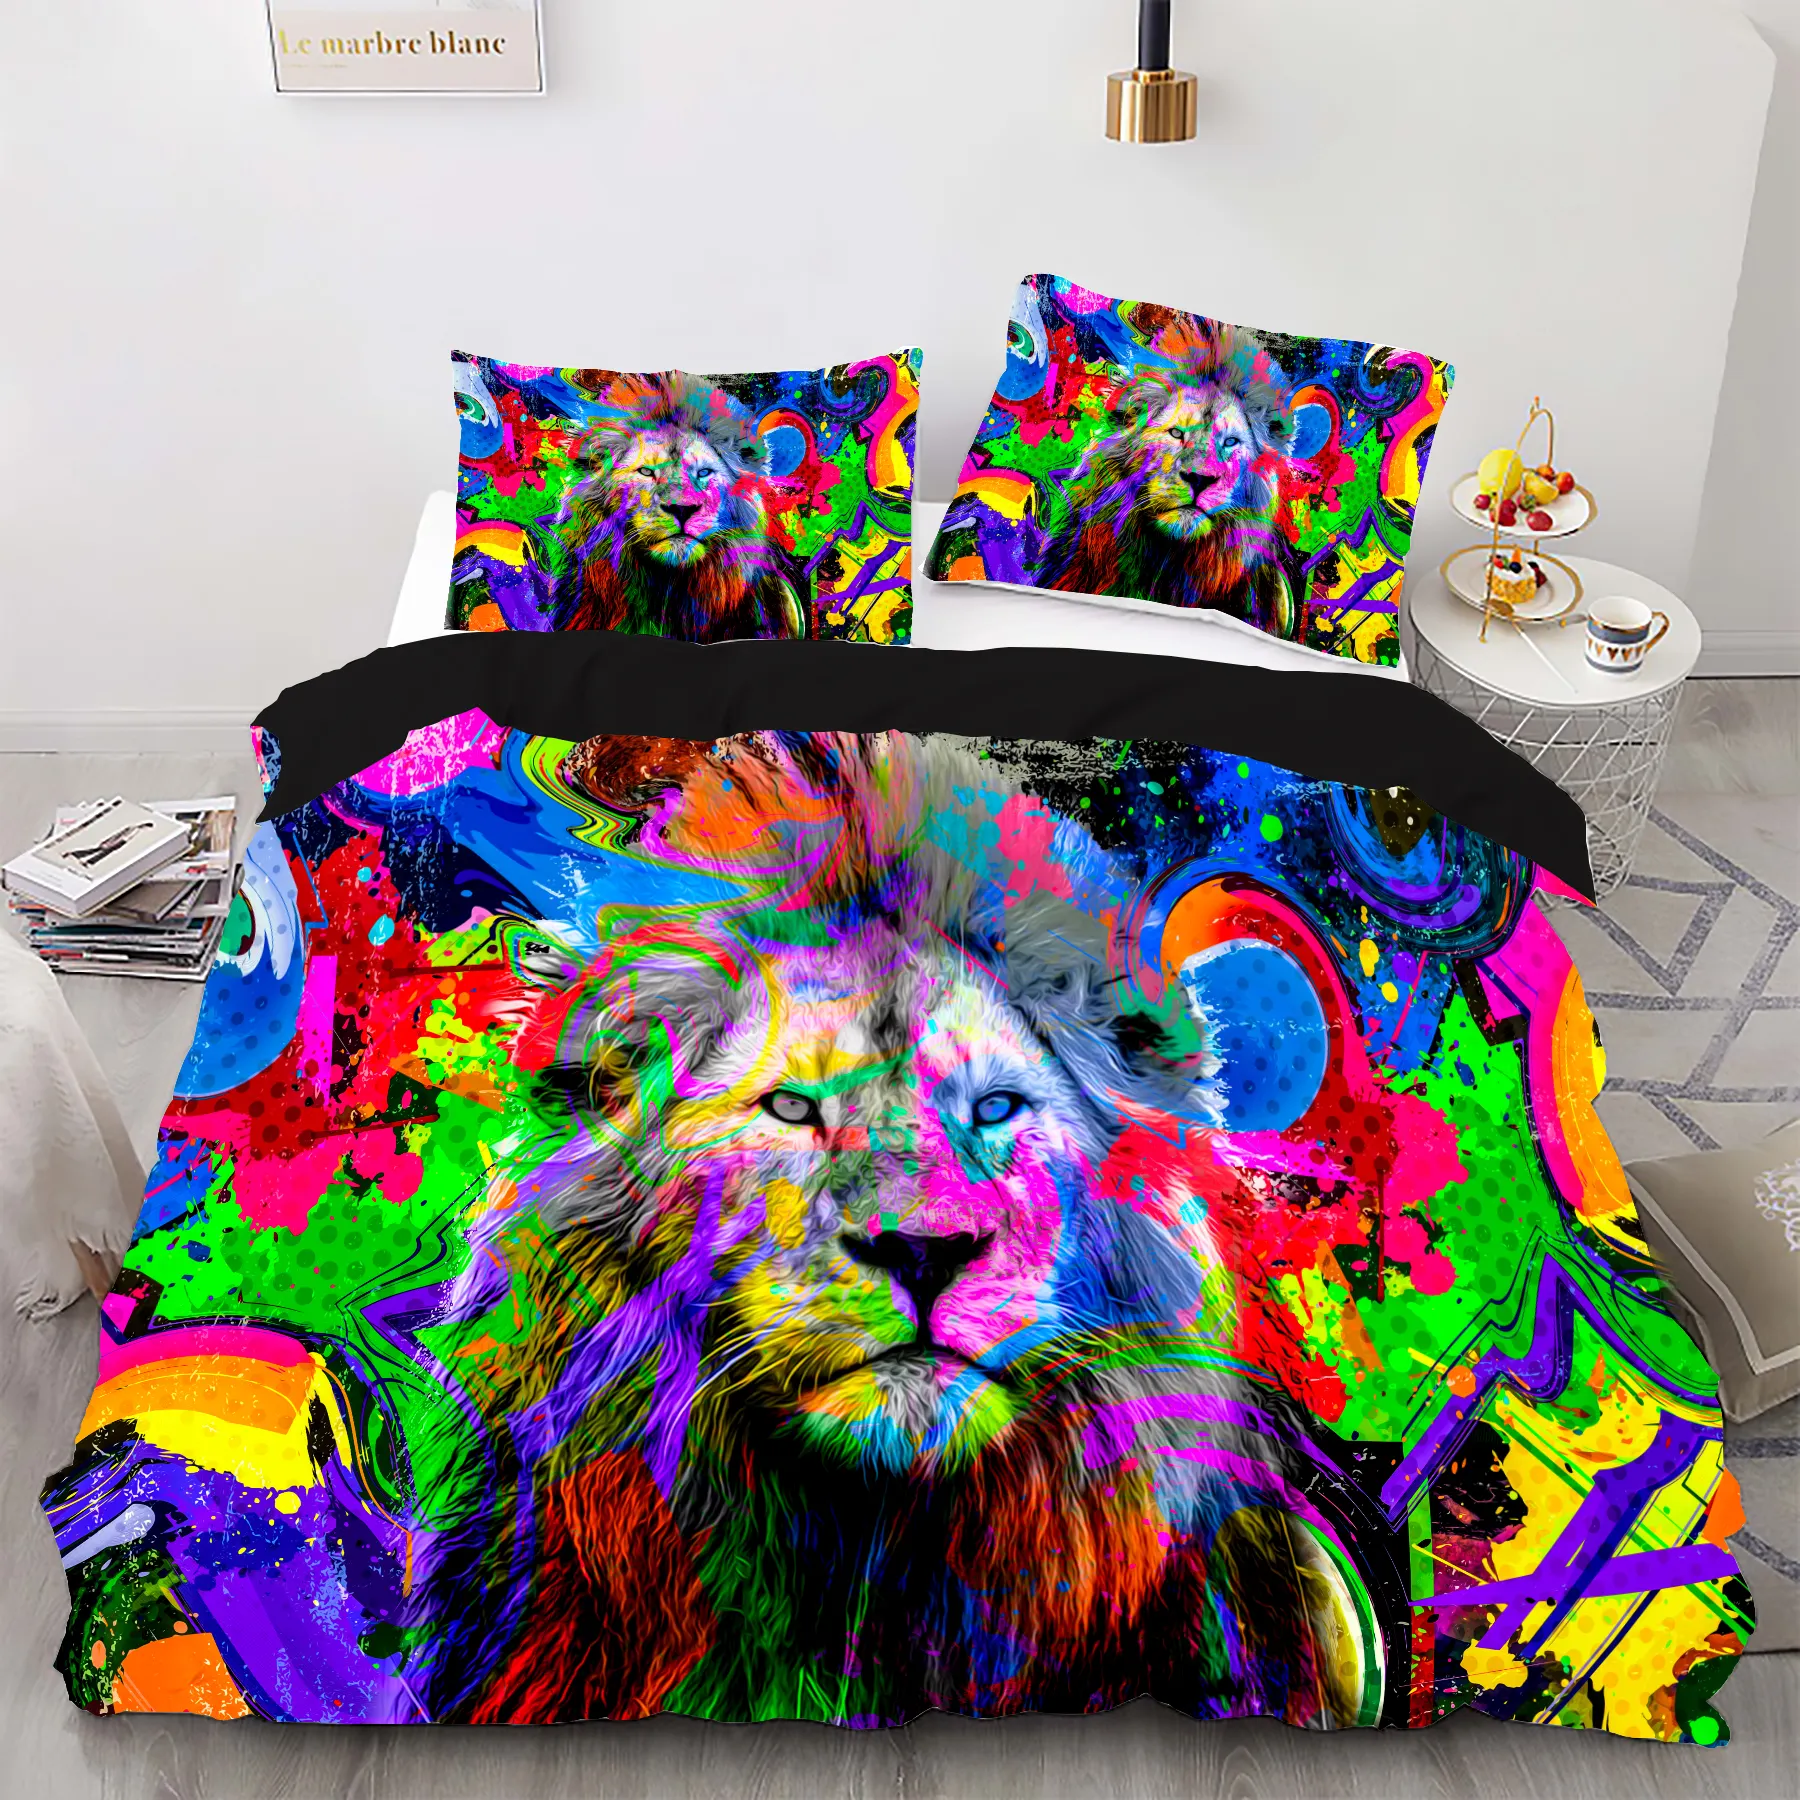 ชุดเครื่องนอนผ้าฝ้ายสำหรับผู้ใหญ่ชุดเครื่องนอนพิมพ์ลายสัตว์สิงโตหลากสีแบบ3D